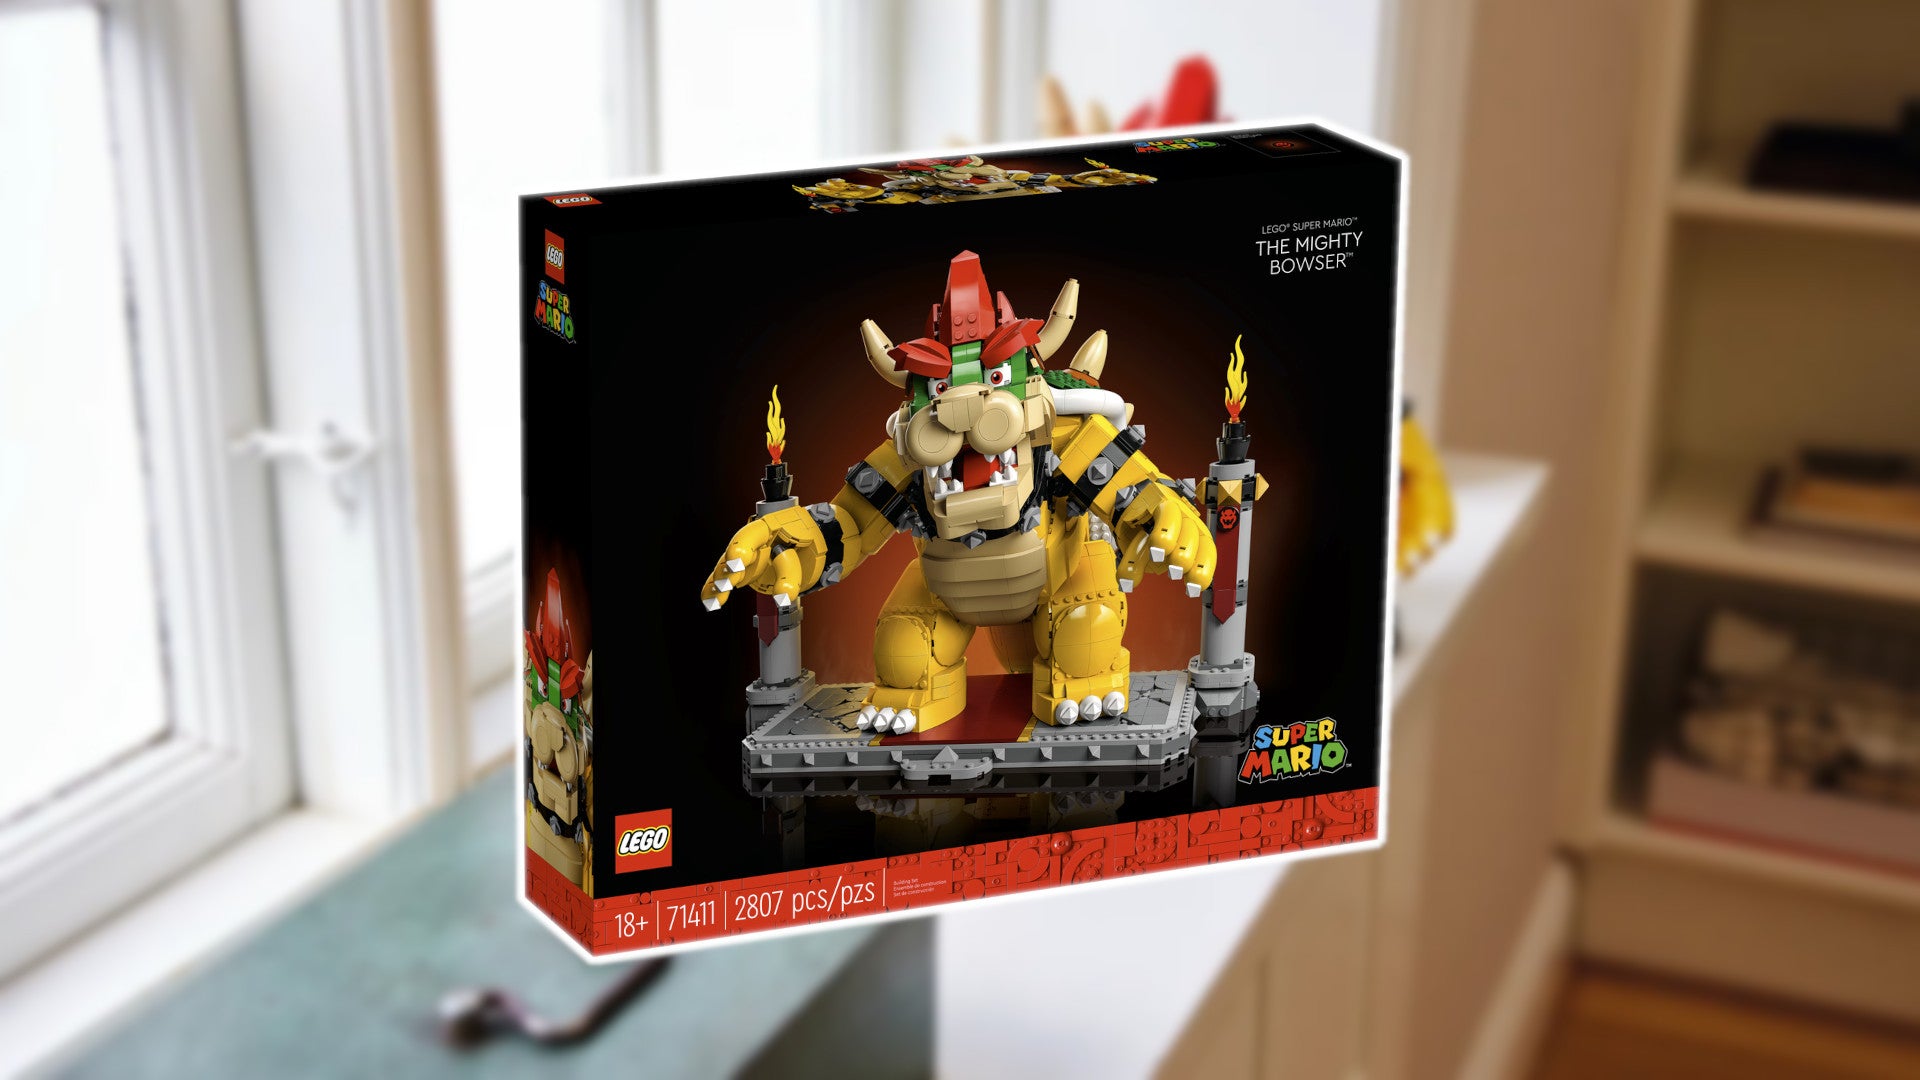 Das neue Lego-Set mit Bowser aus Super Mario.